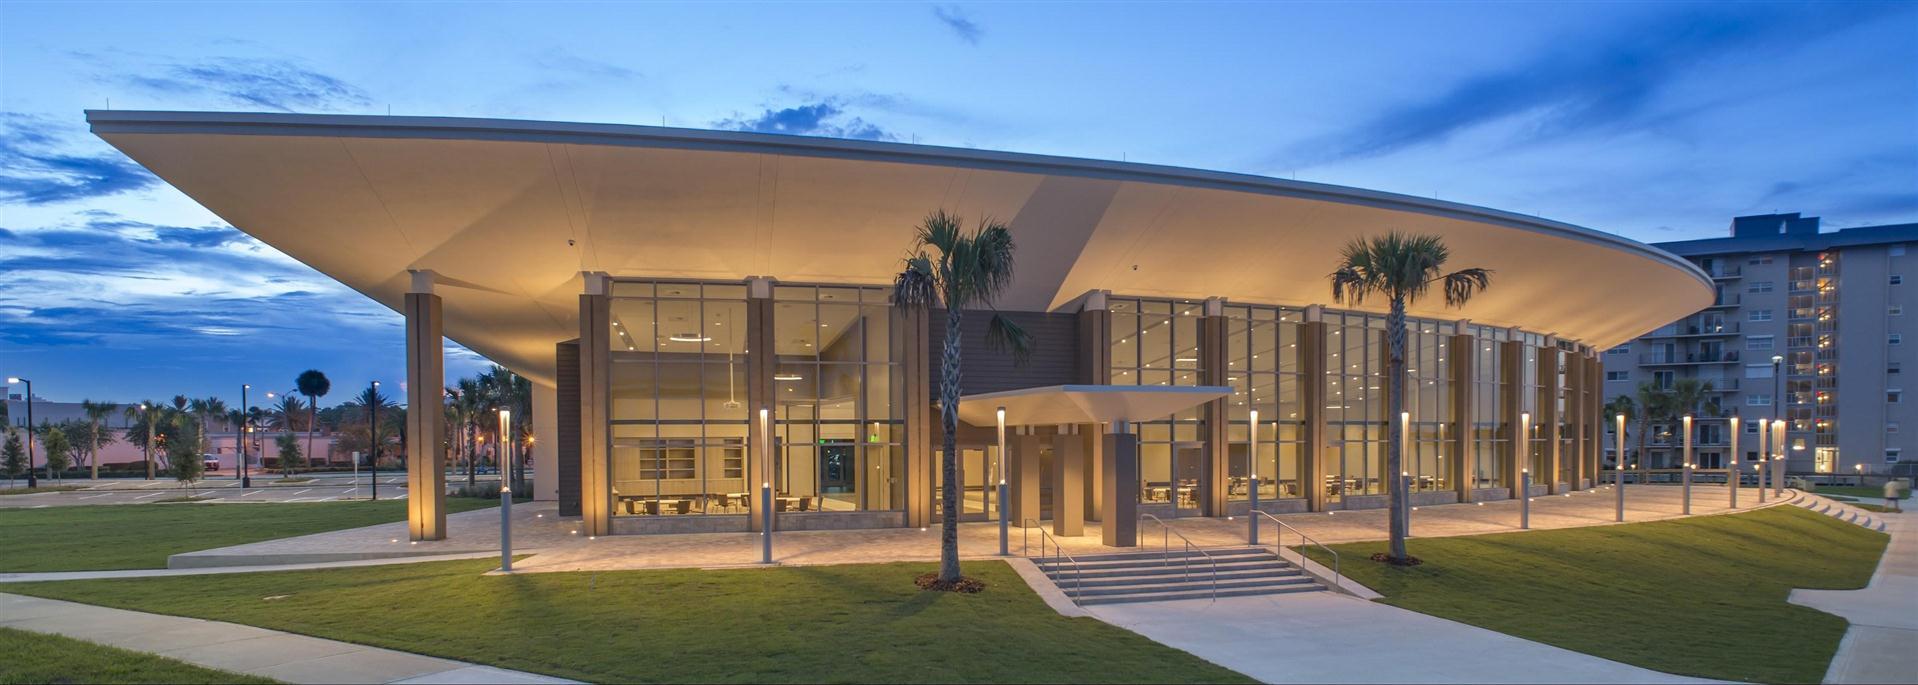 Brannon Civic Center in New Smyrna Beach, FL